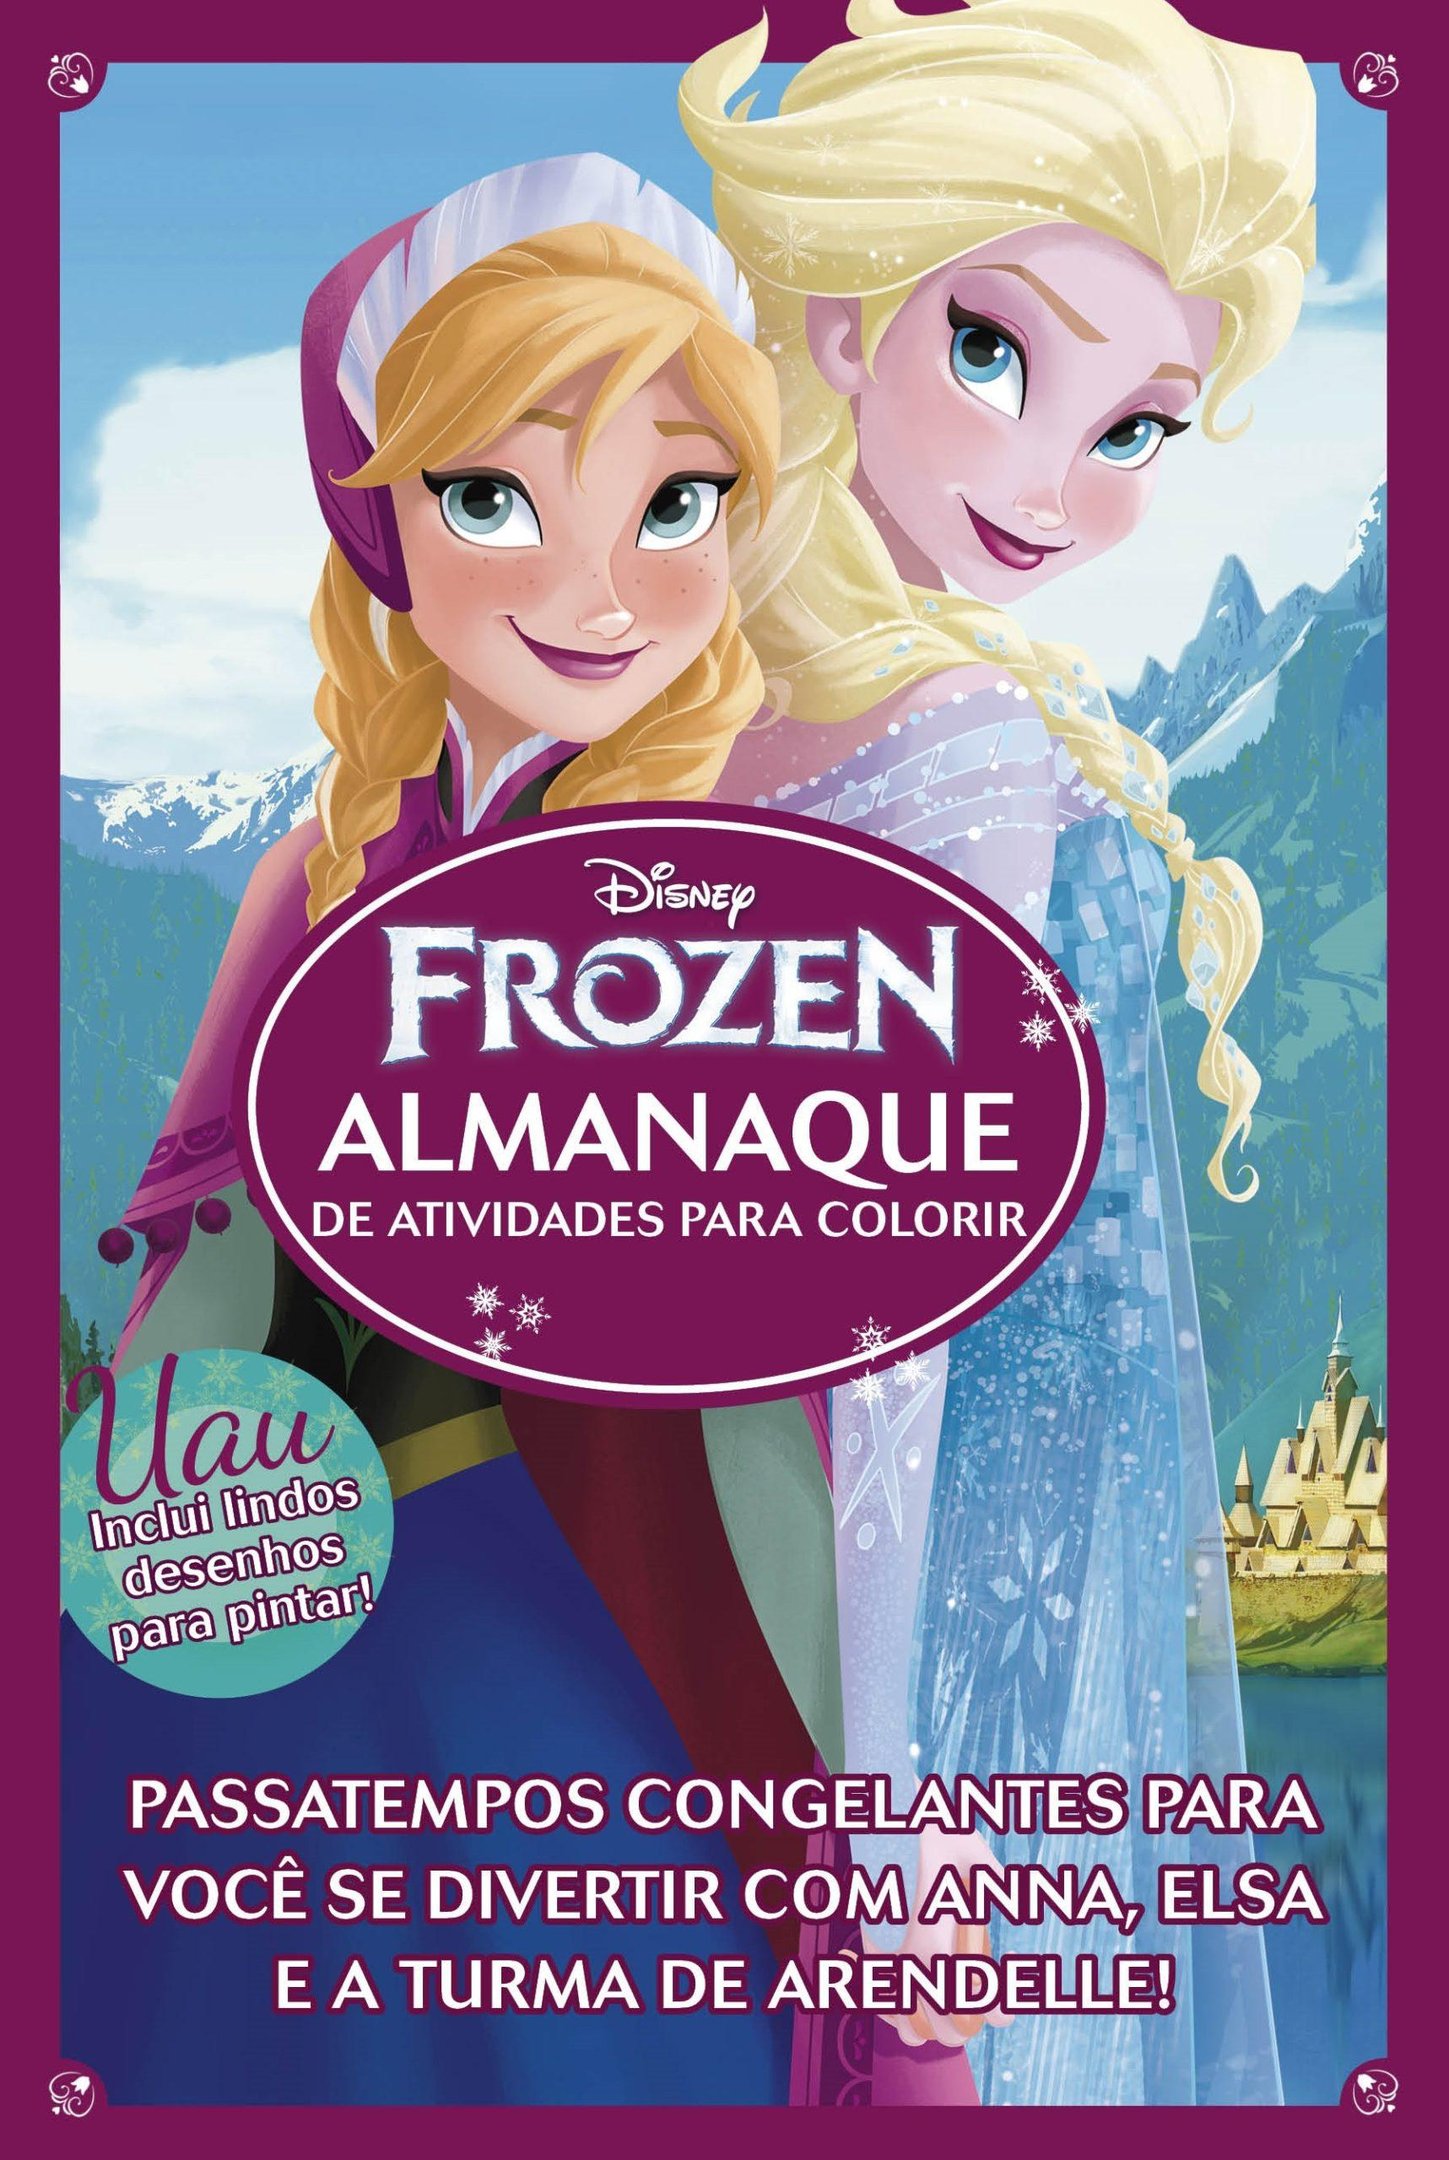 Frozen Almanaque De Atividades Para Colorir - RioMar Aracaju Online